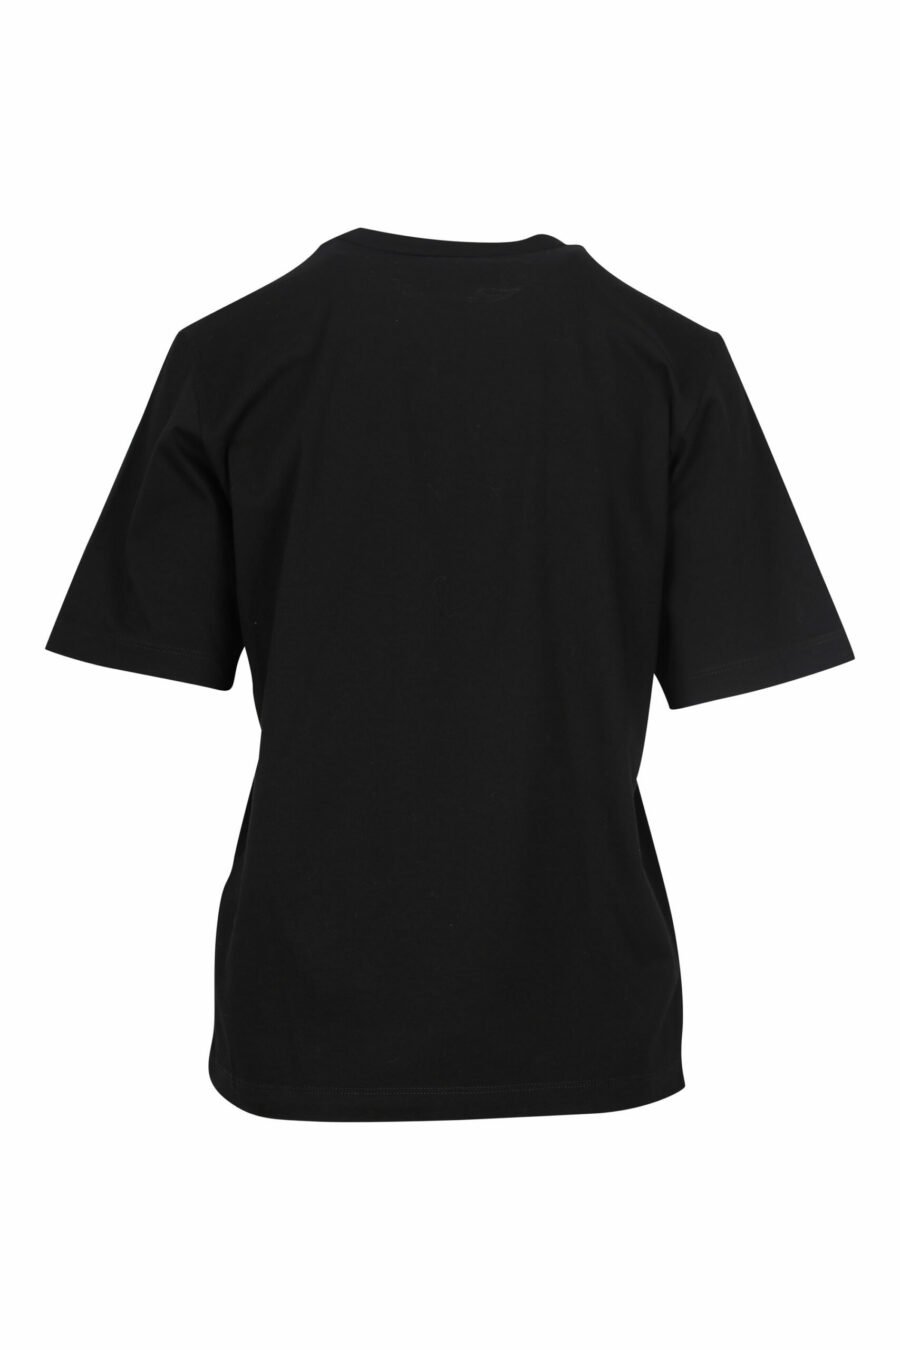 T-shirt noir avec logo "icon pixeled" - 8054148006464 1 scaled